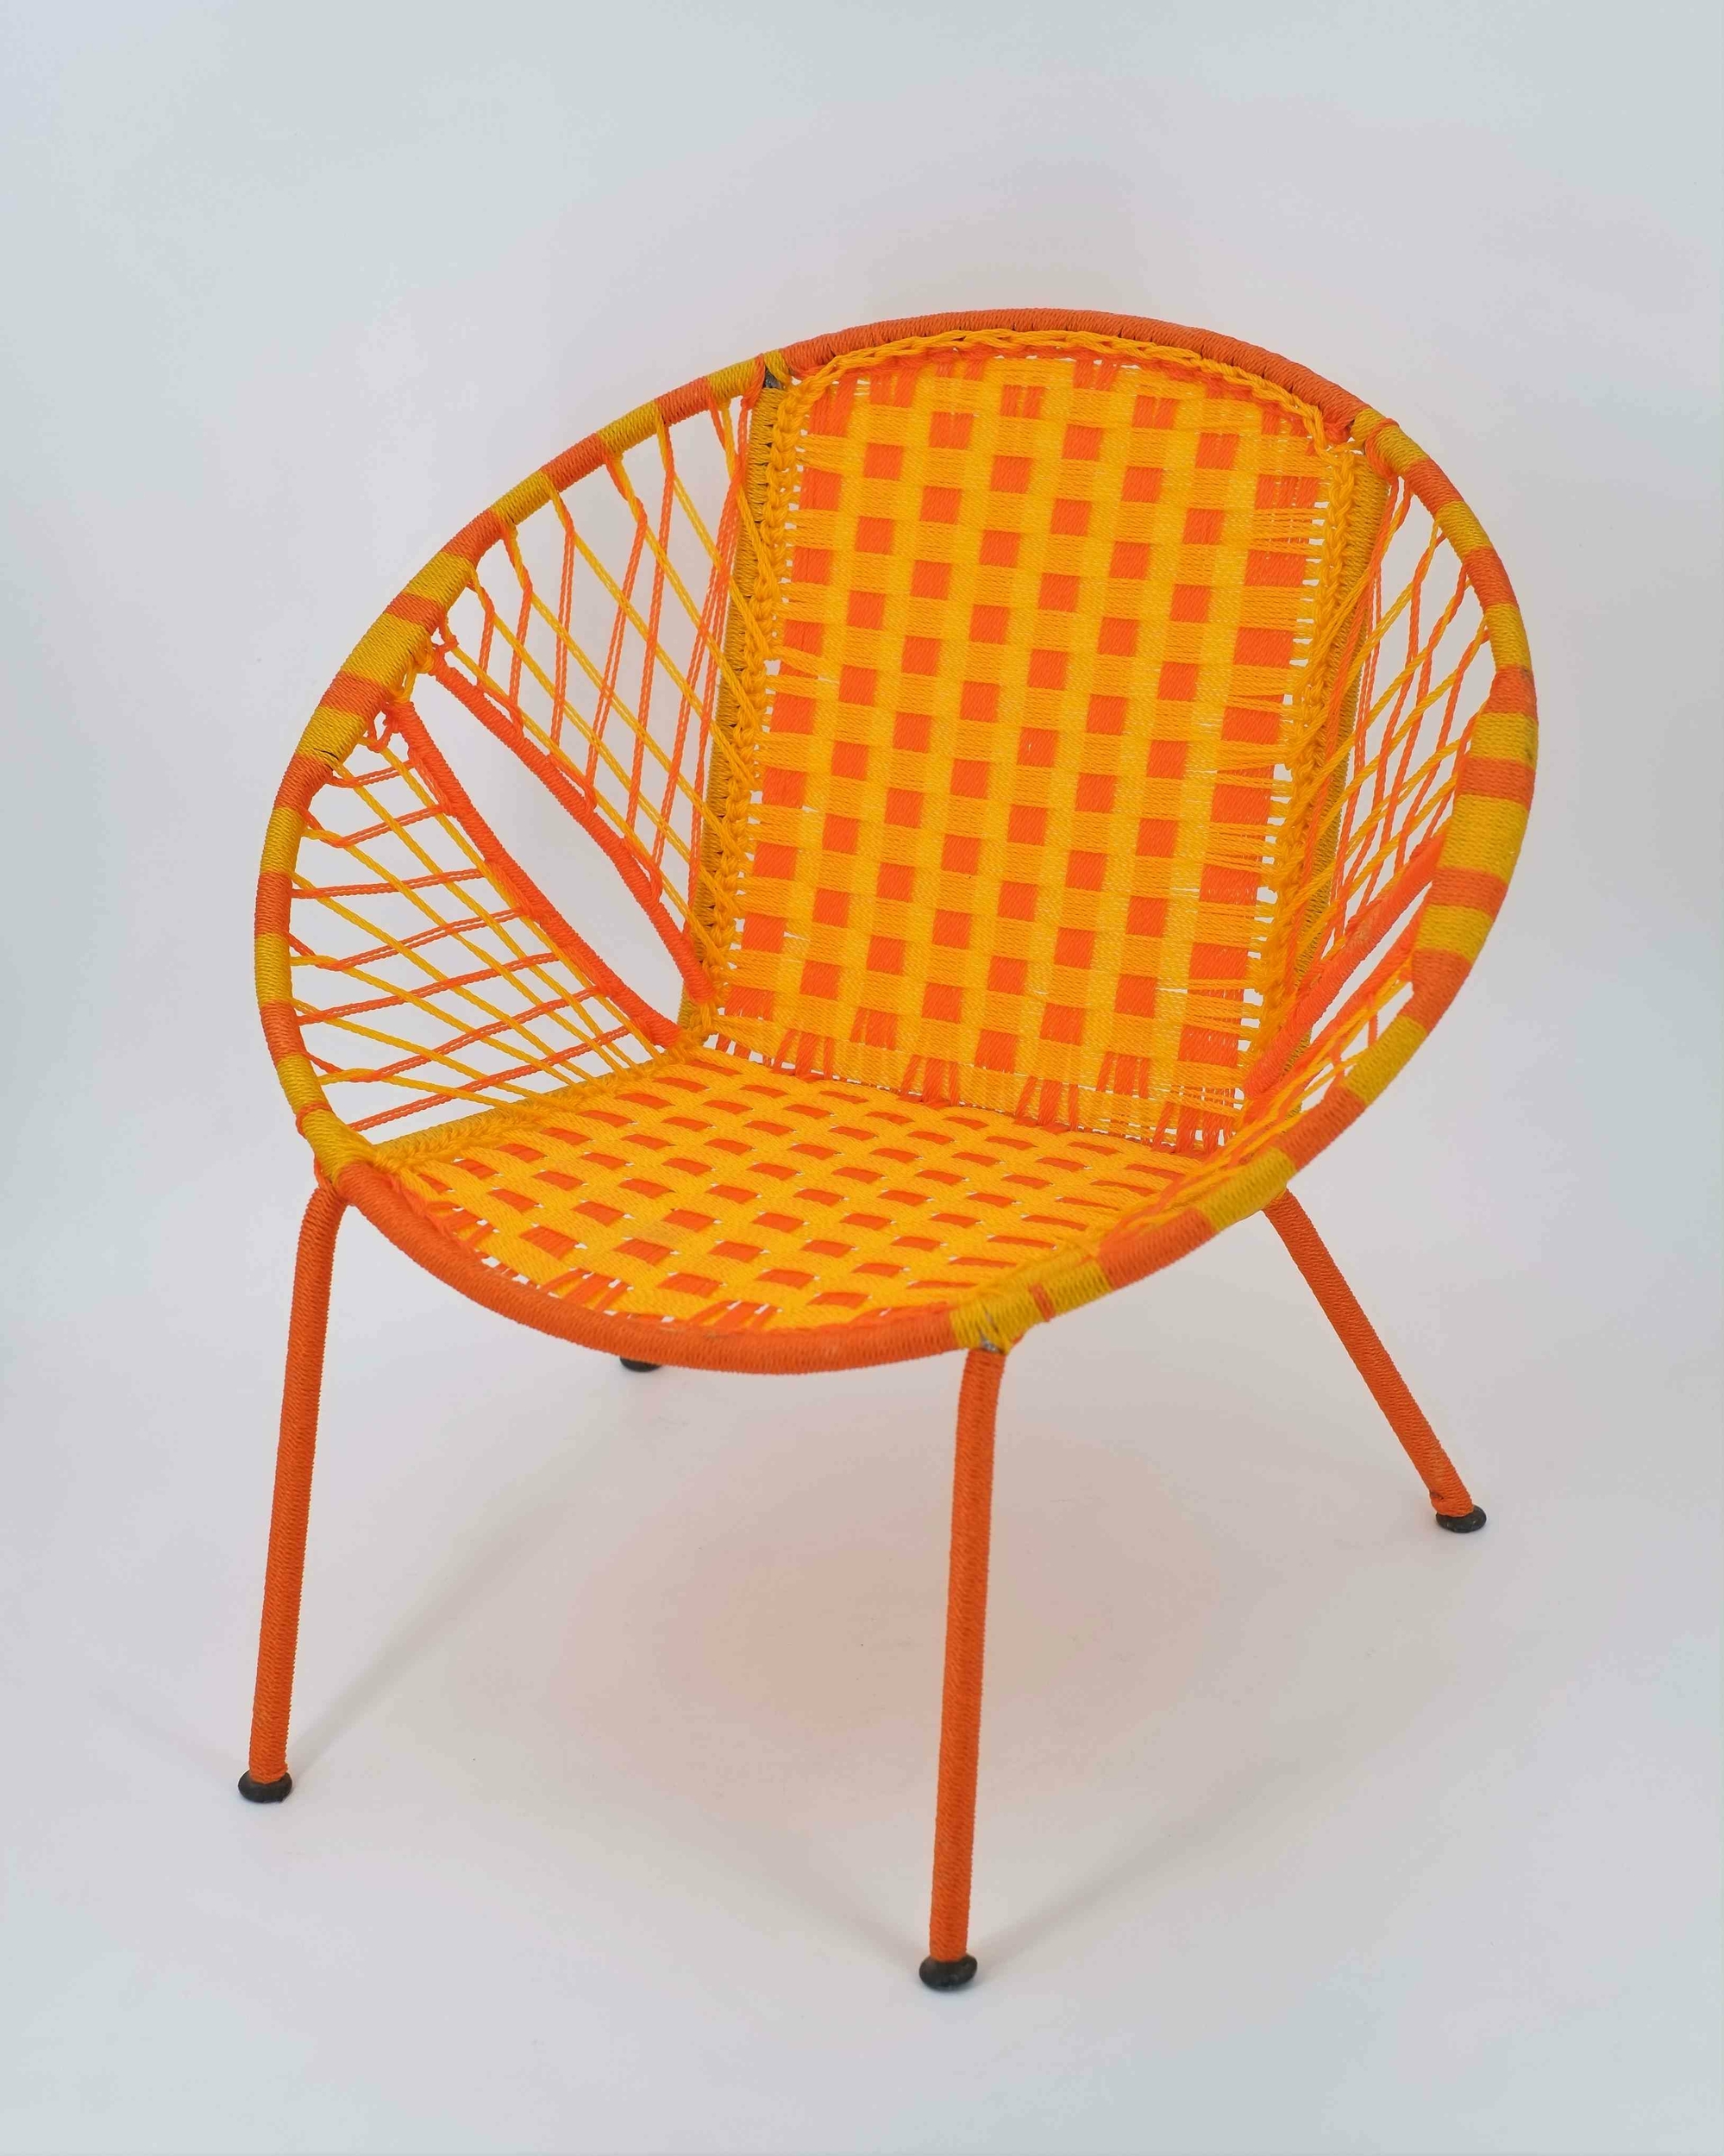 Chaise enfant en métal et fil de pêche recyclés modèle panier bicolore orange jaune- Sénégal